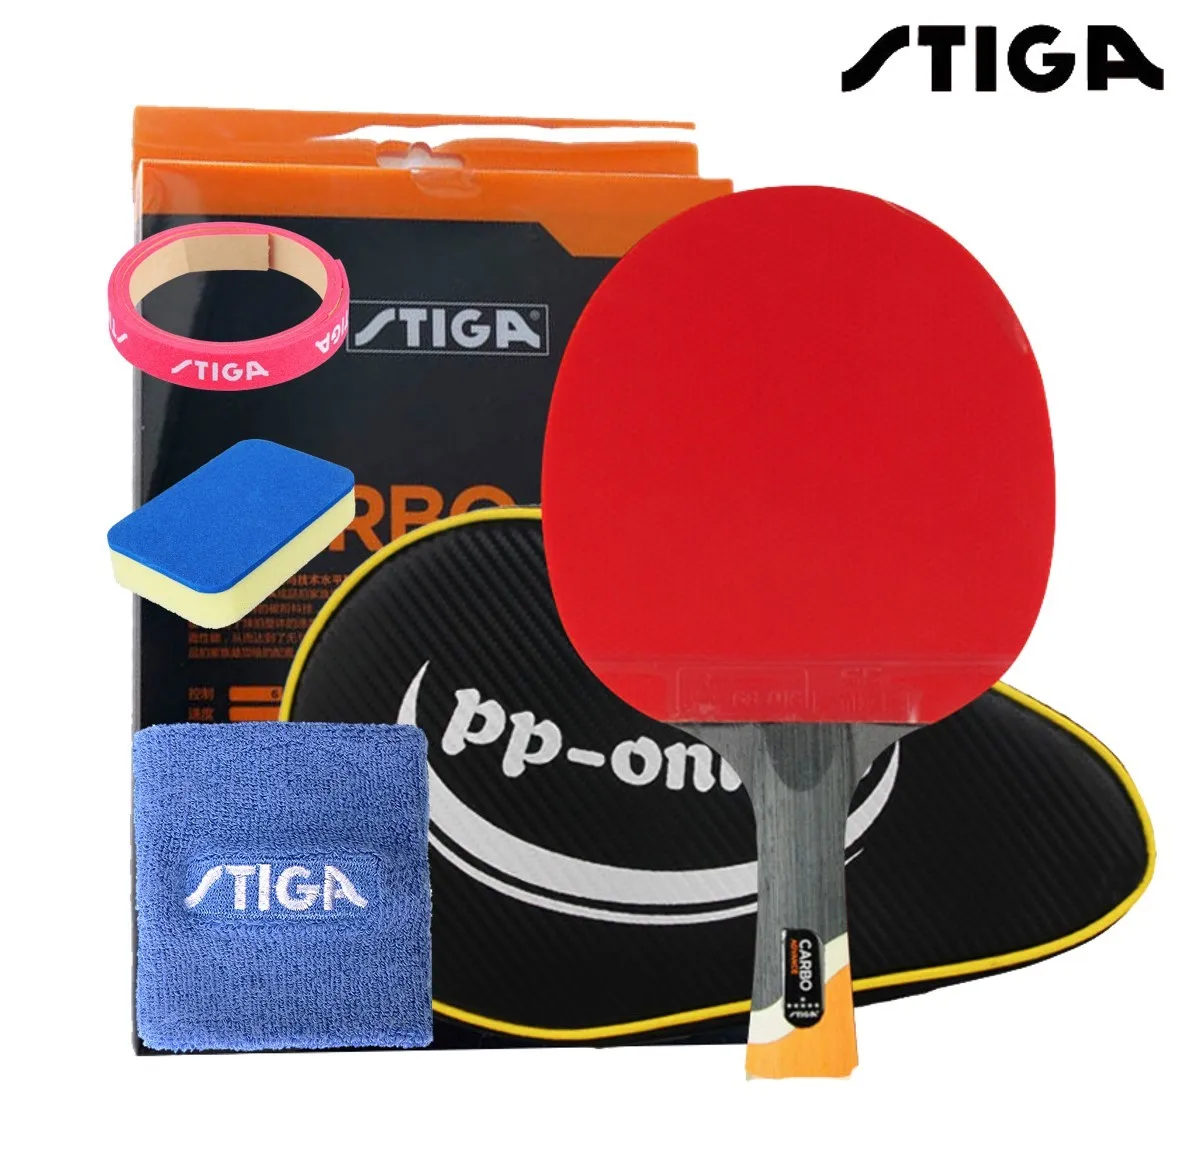 STIGA professionelle Carbon 6 STERNE tischtennis schläger für offensive schläger sport schläger Ping Pong Raquete pickel in